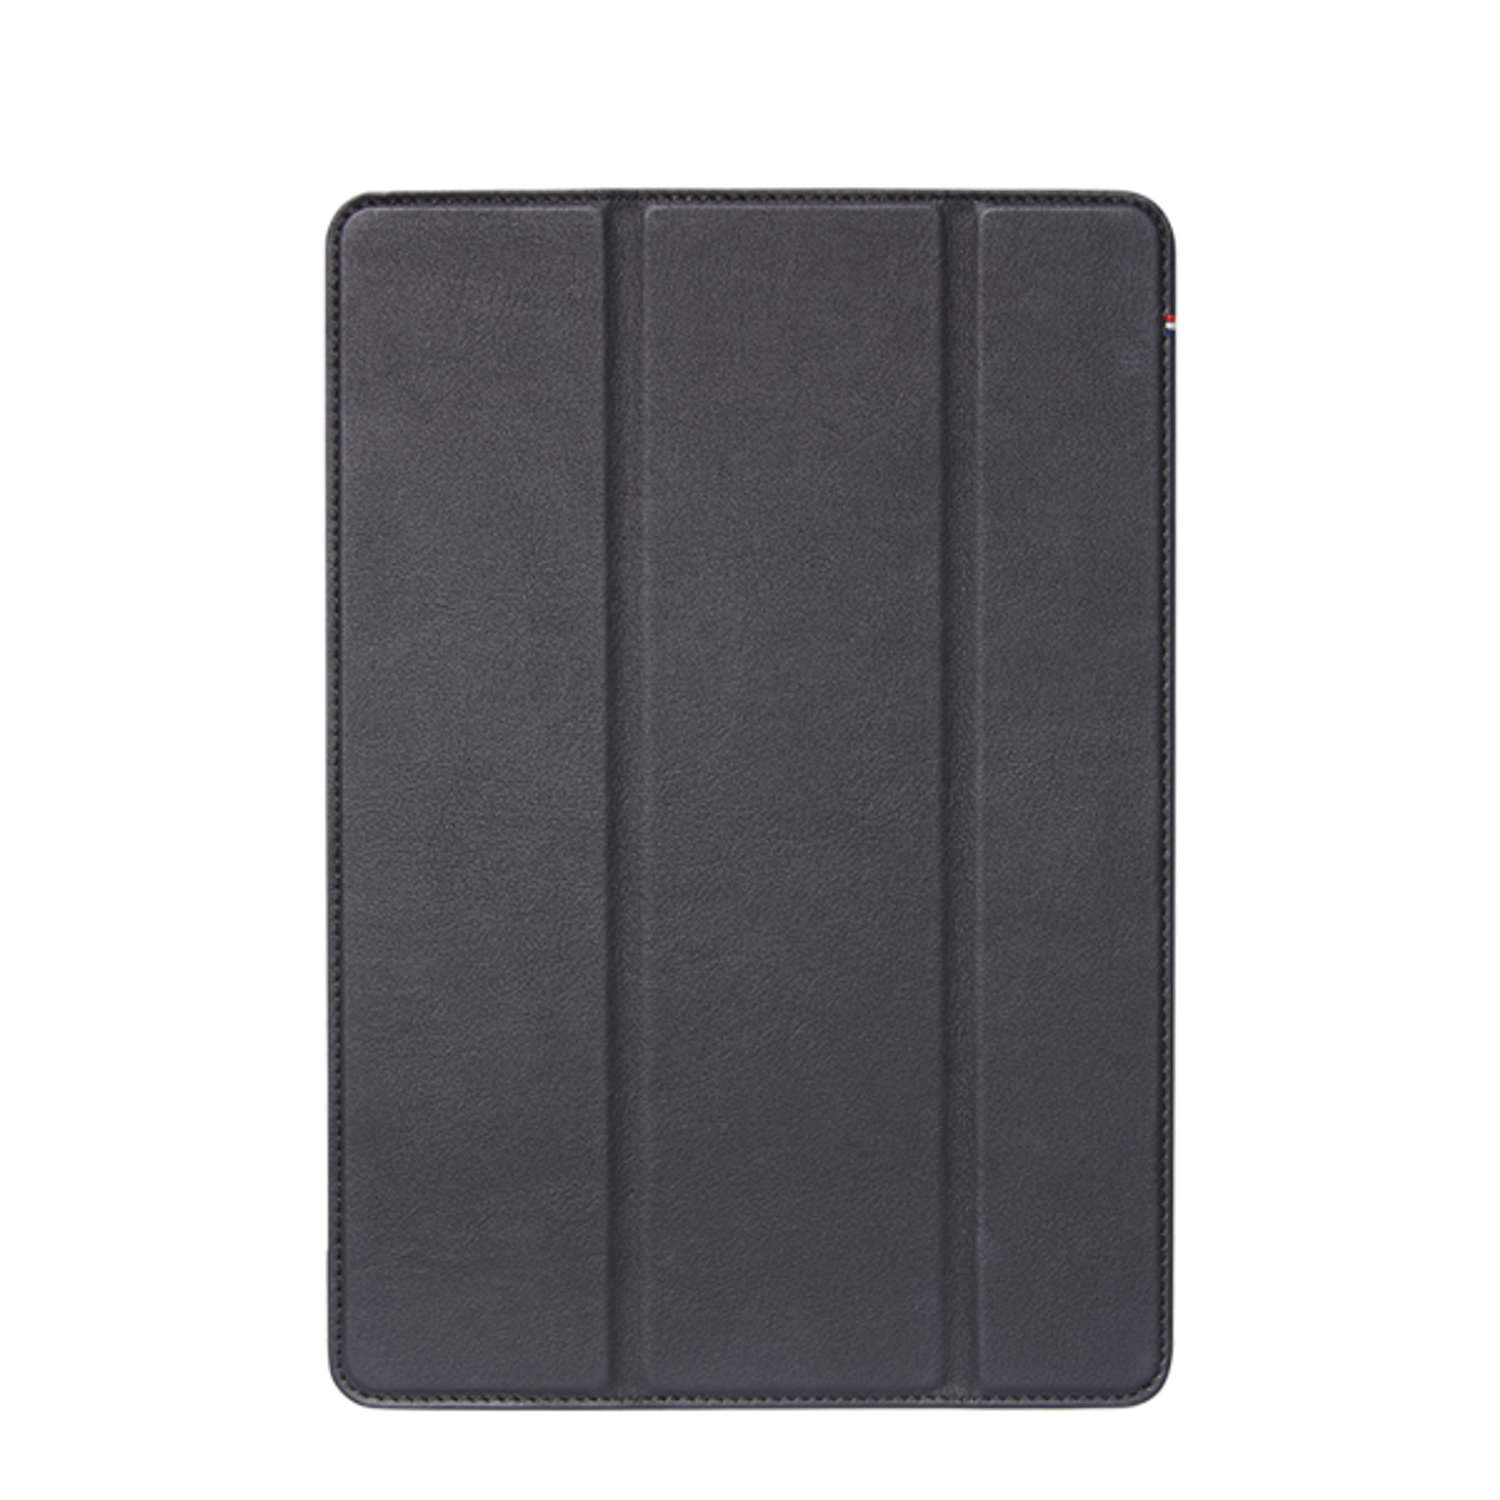 Funda folio para cuero para iPad 9/8/7 Gen Decoded Negro